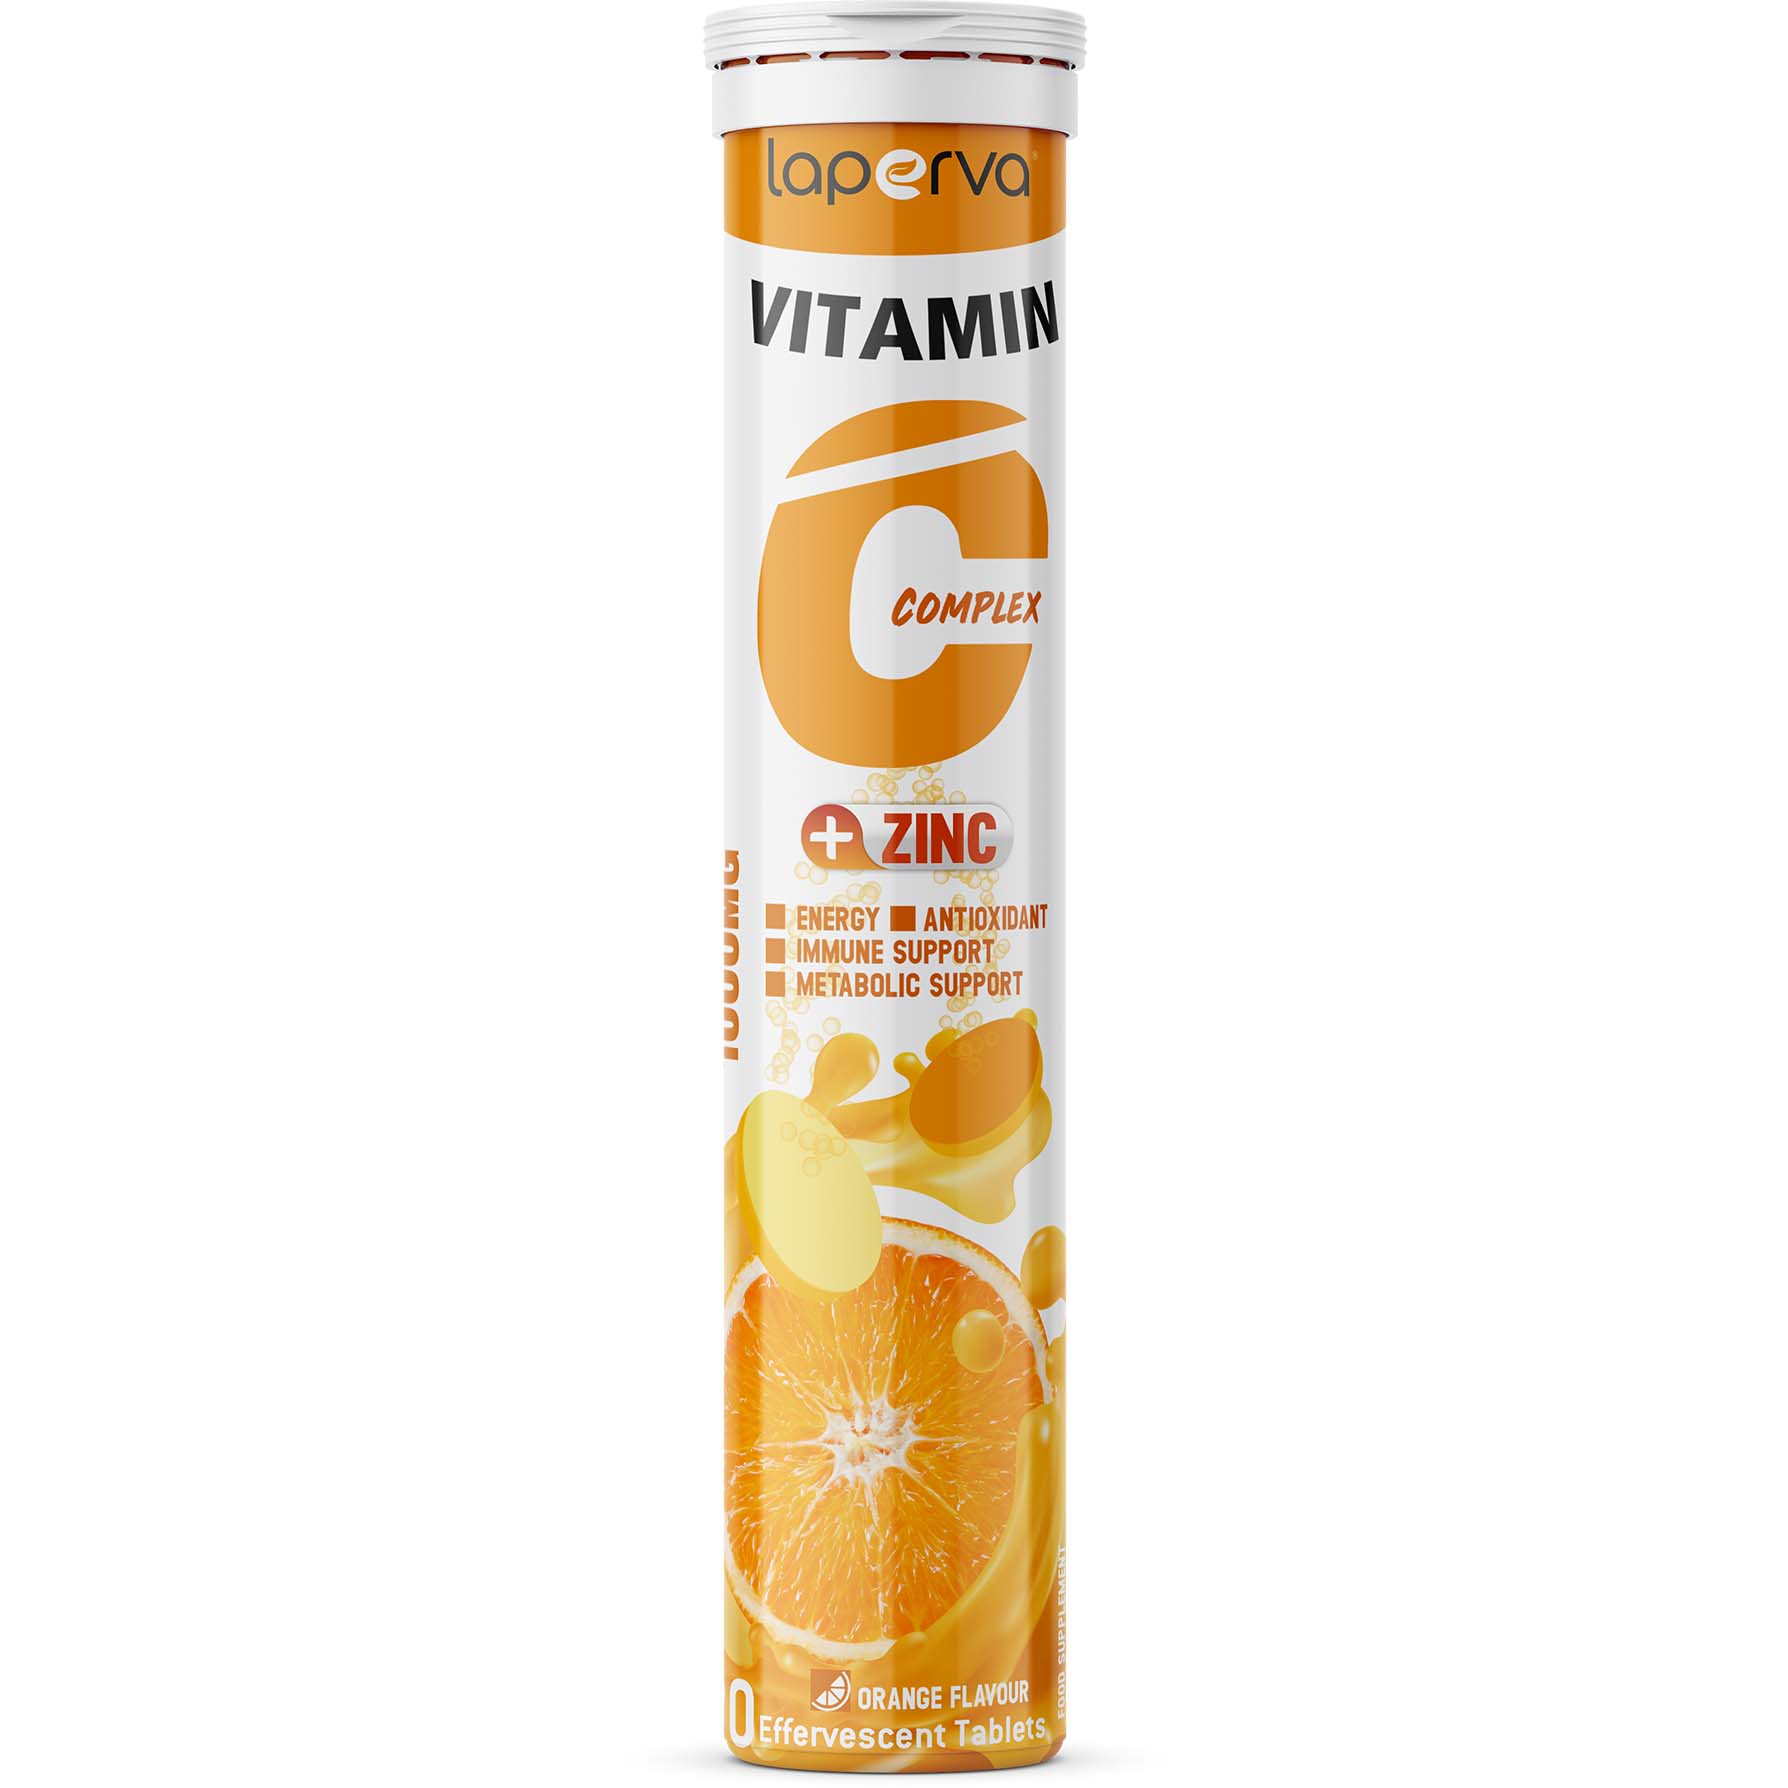 Laperva Vitamin C Complex Plus Zinc, 20 Effervescent Tablets, Orange